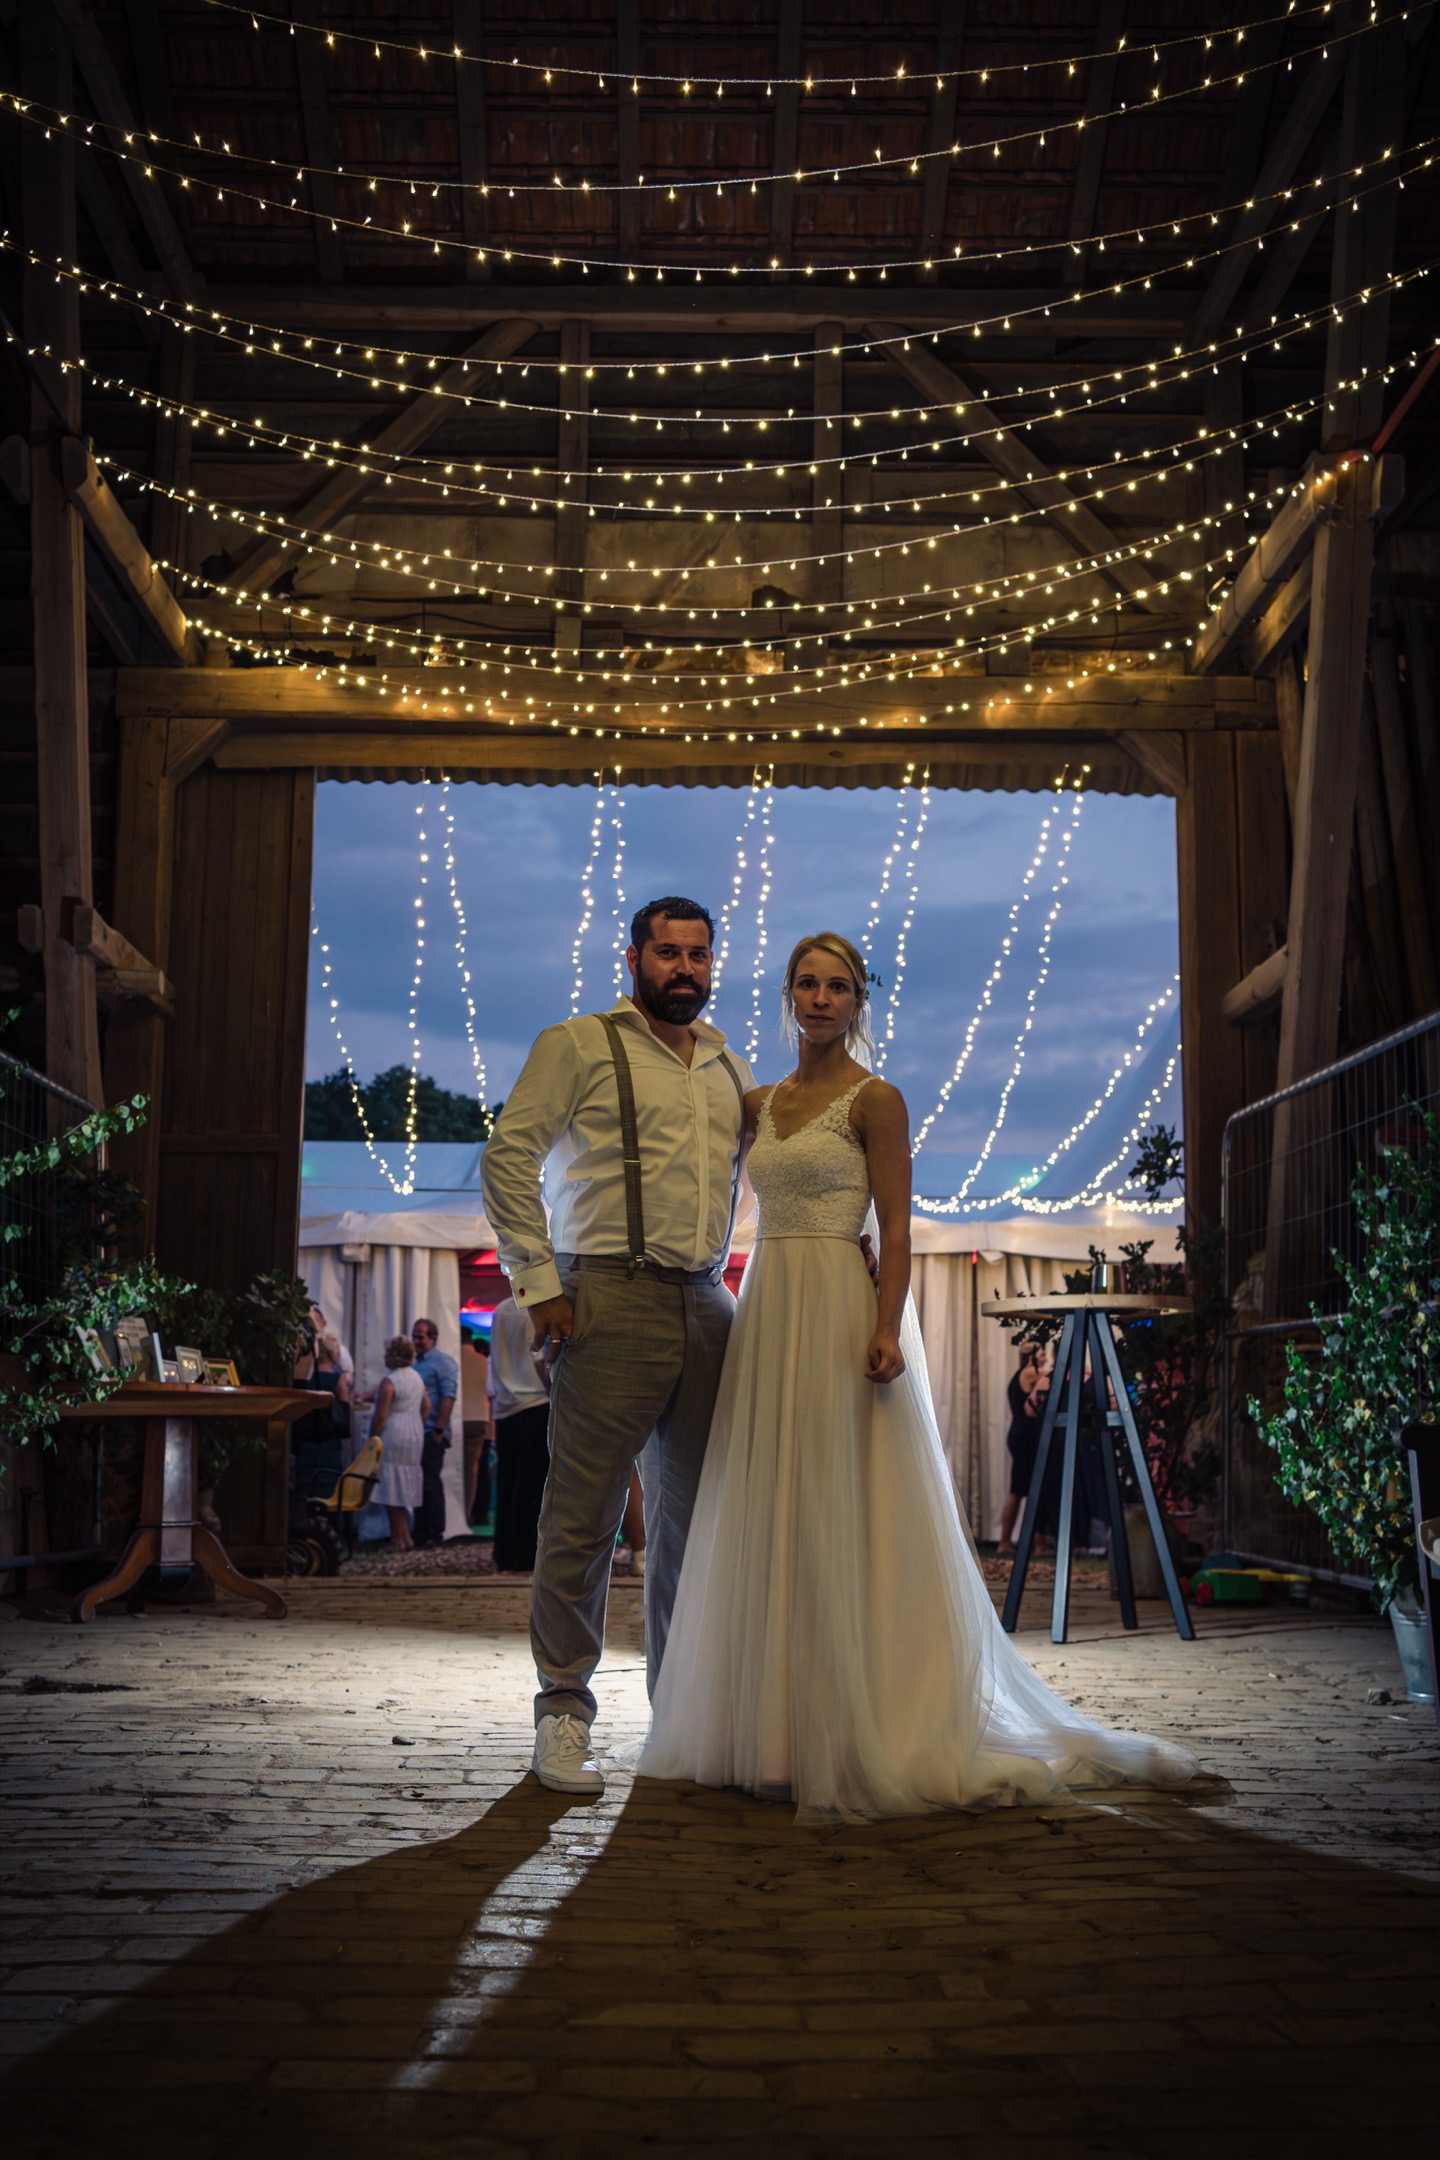 Brautpaar mit Lichterkette vor dem Eingang zur Hochzeitsfeier